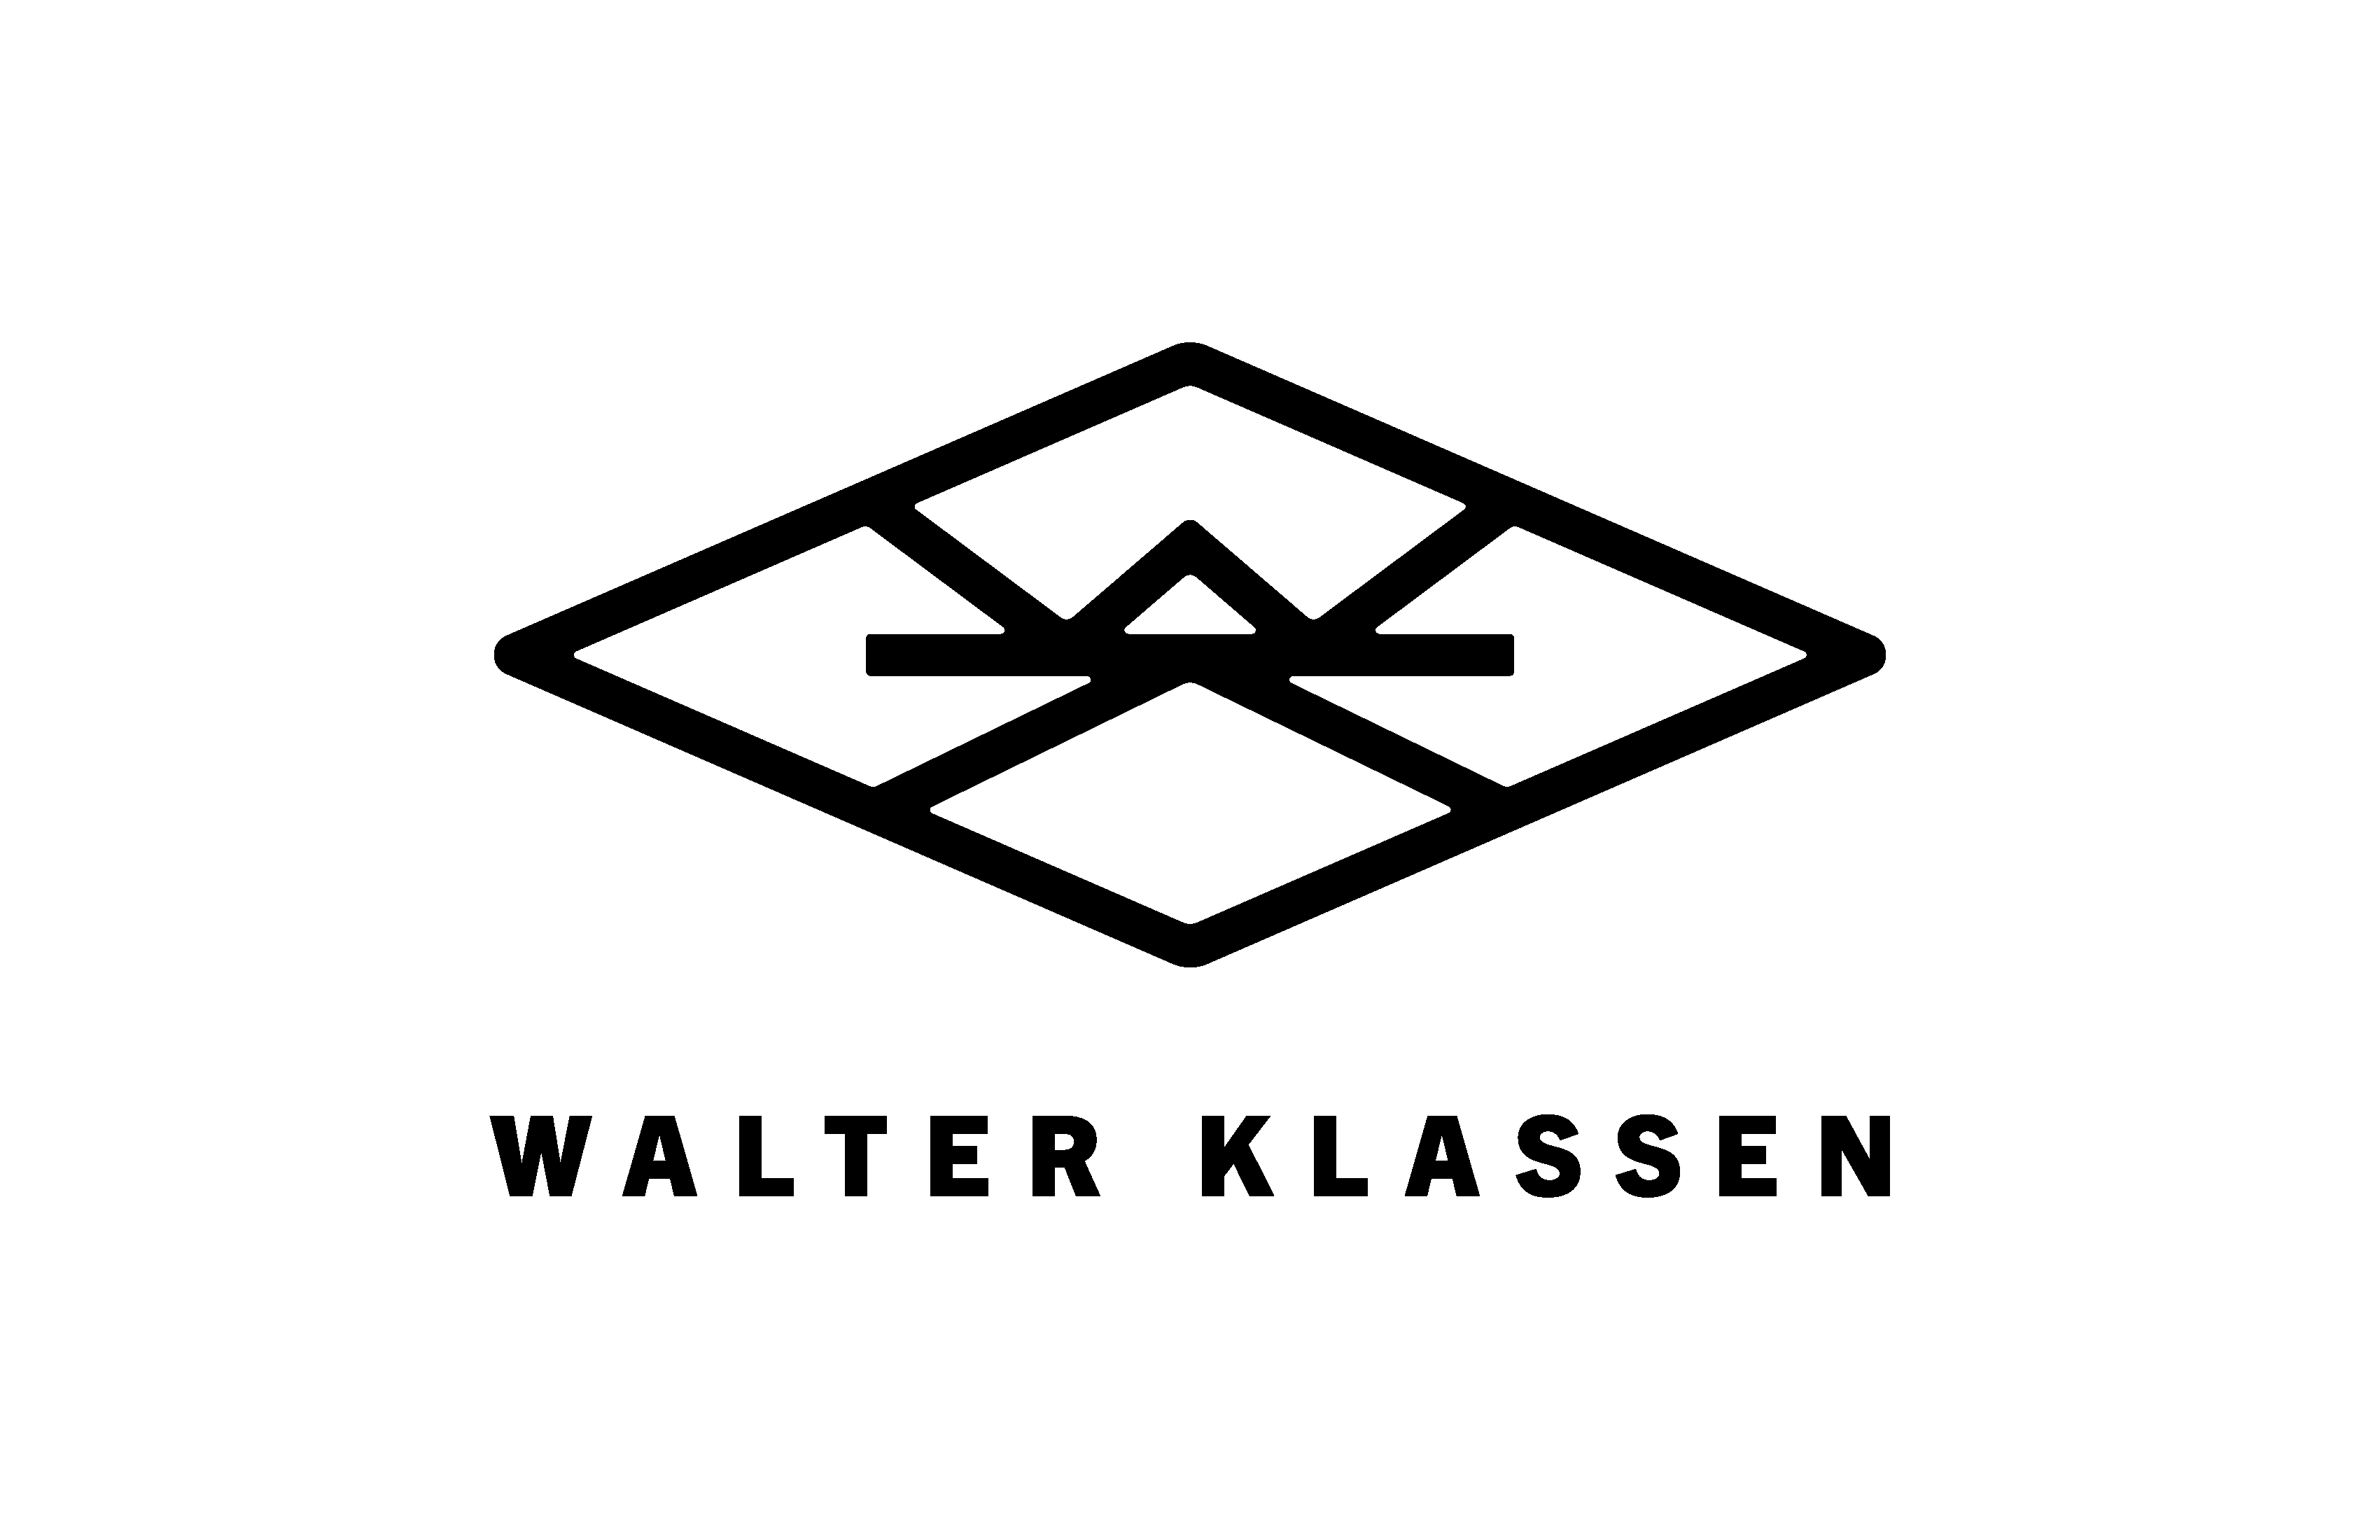 Walter Klassen